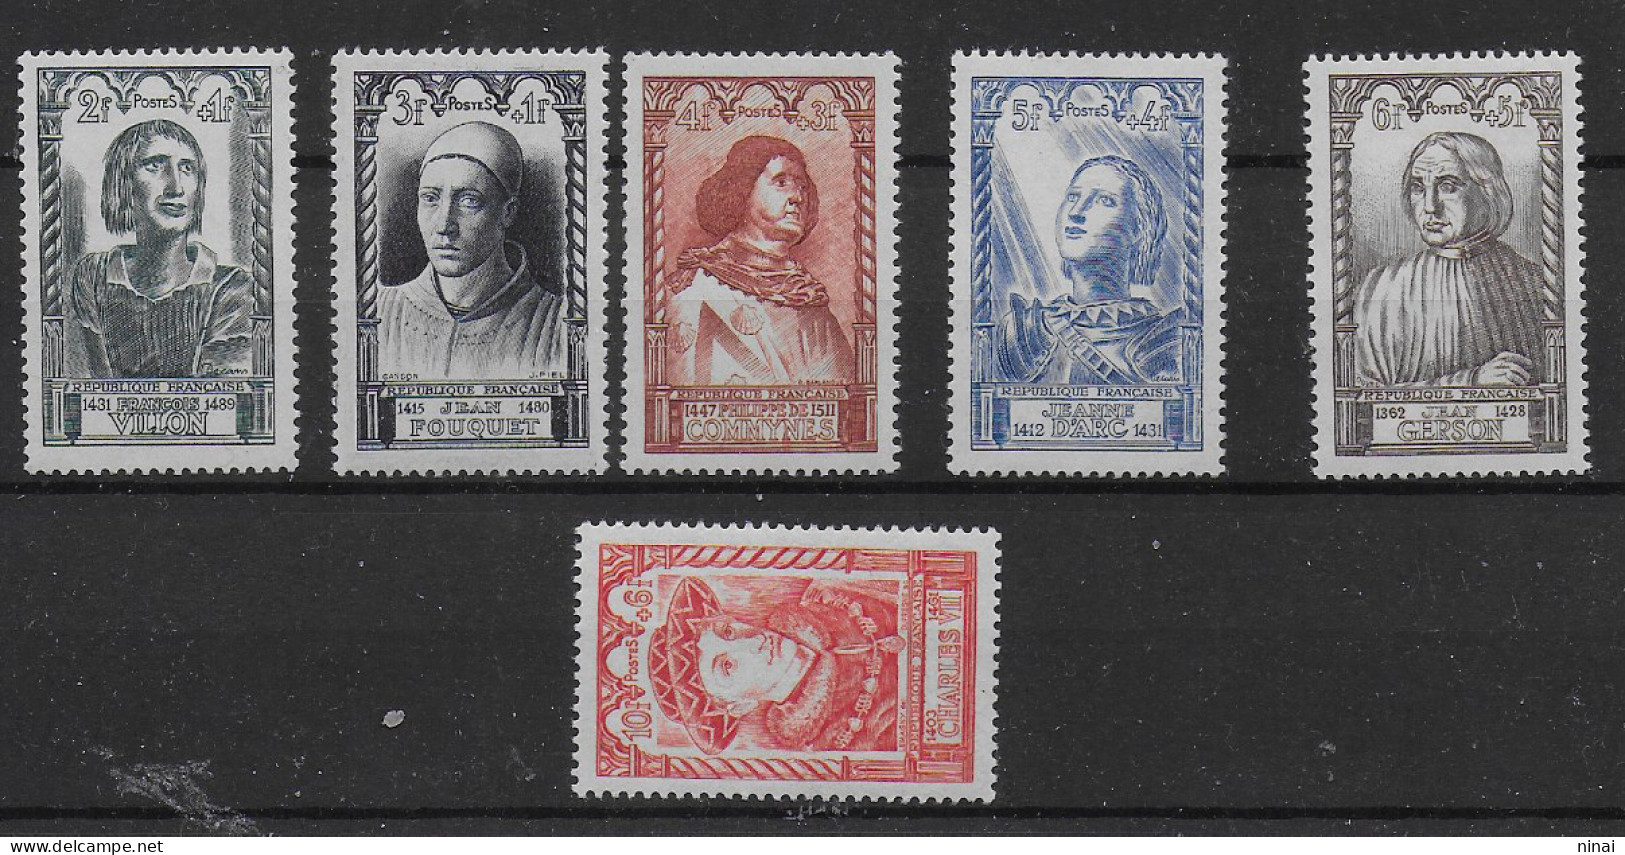 FRANCIA 1946 " CELEBRITA' " SERIE COMPLETA 6 VALORI INTEGRI  ** MNH LUSSO C2055 - Unused Stamps